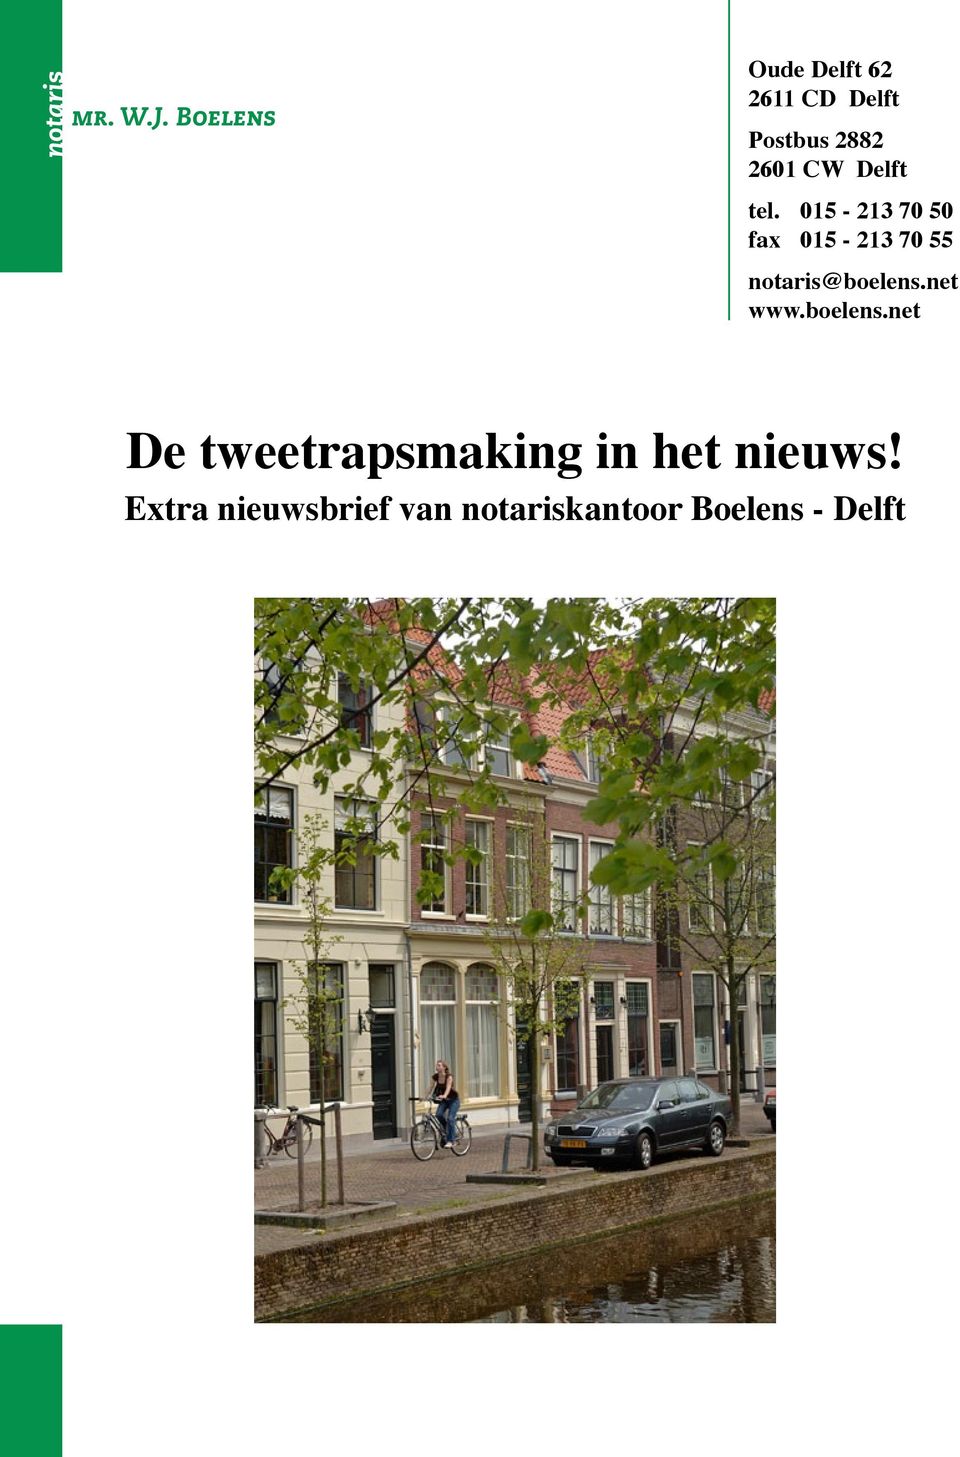 Delft tel. 015-213 70 50 fax 015-213 70 55 notaris@boelens.